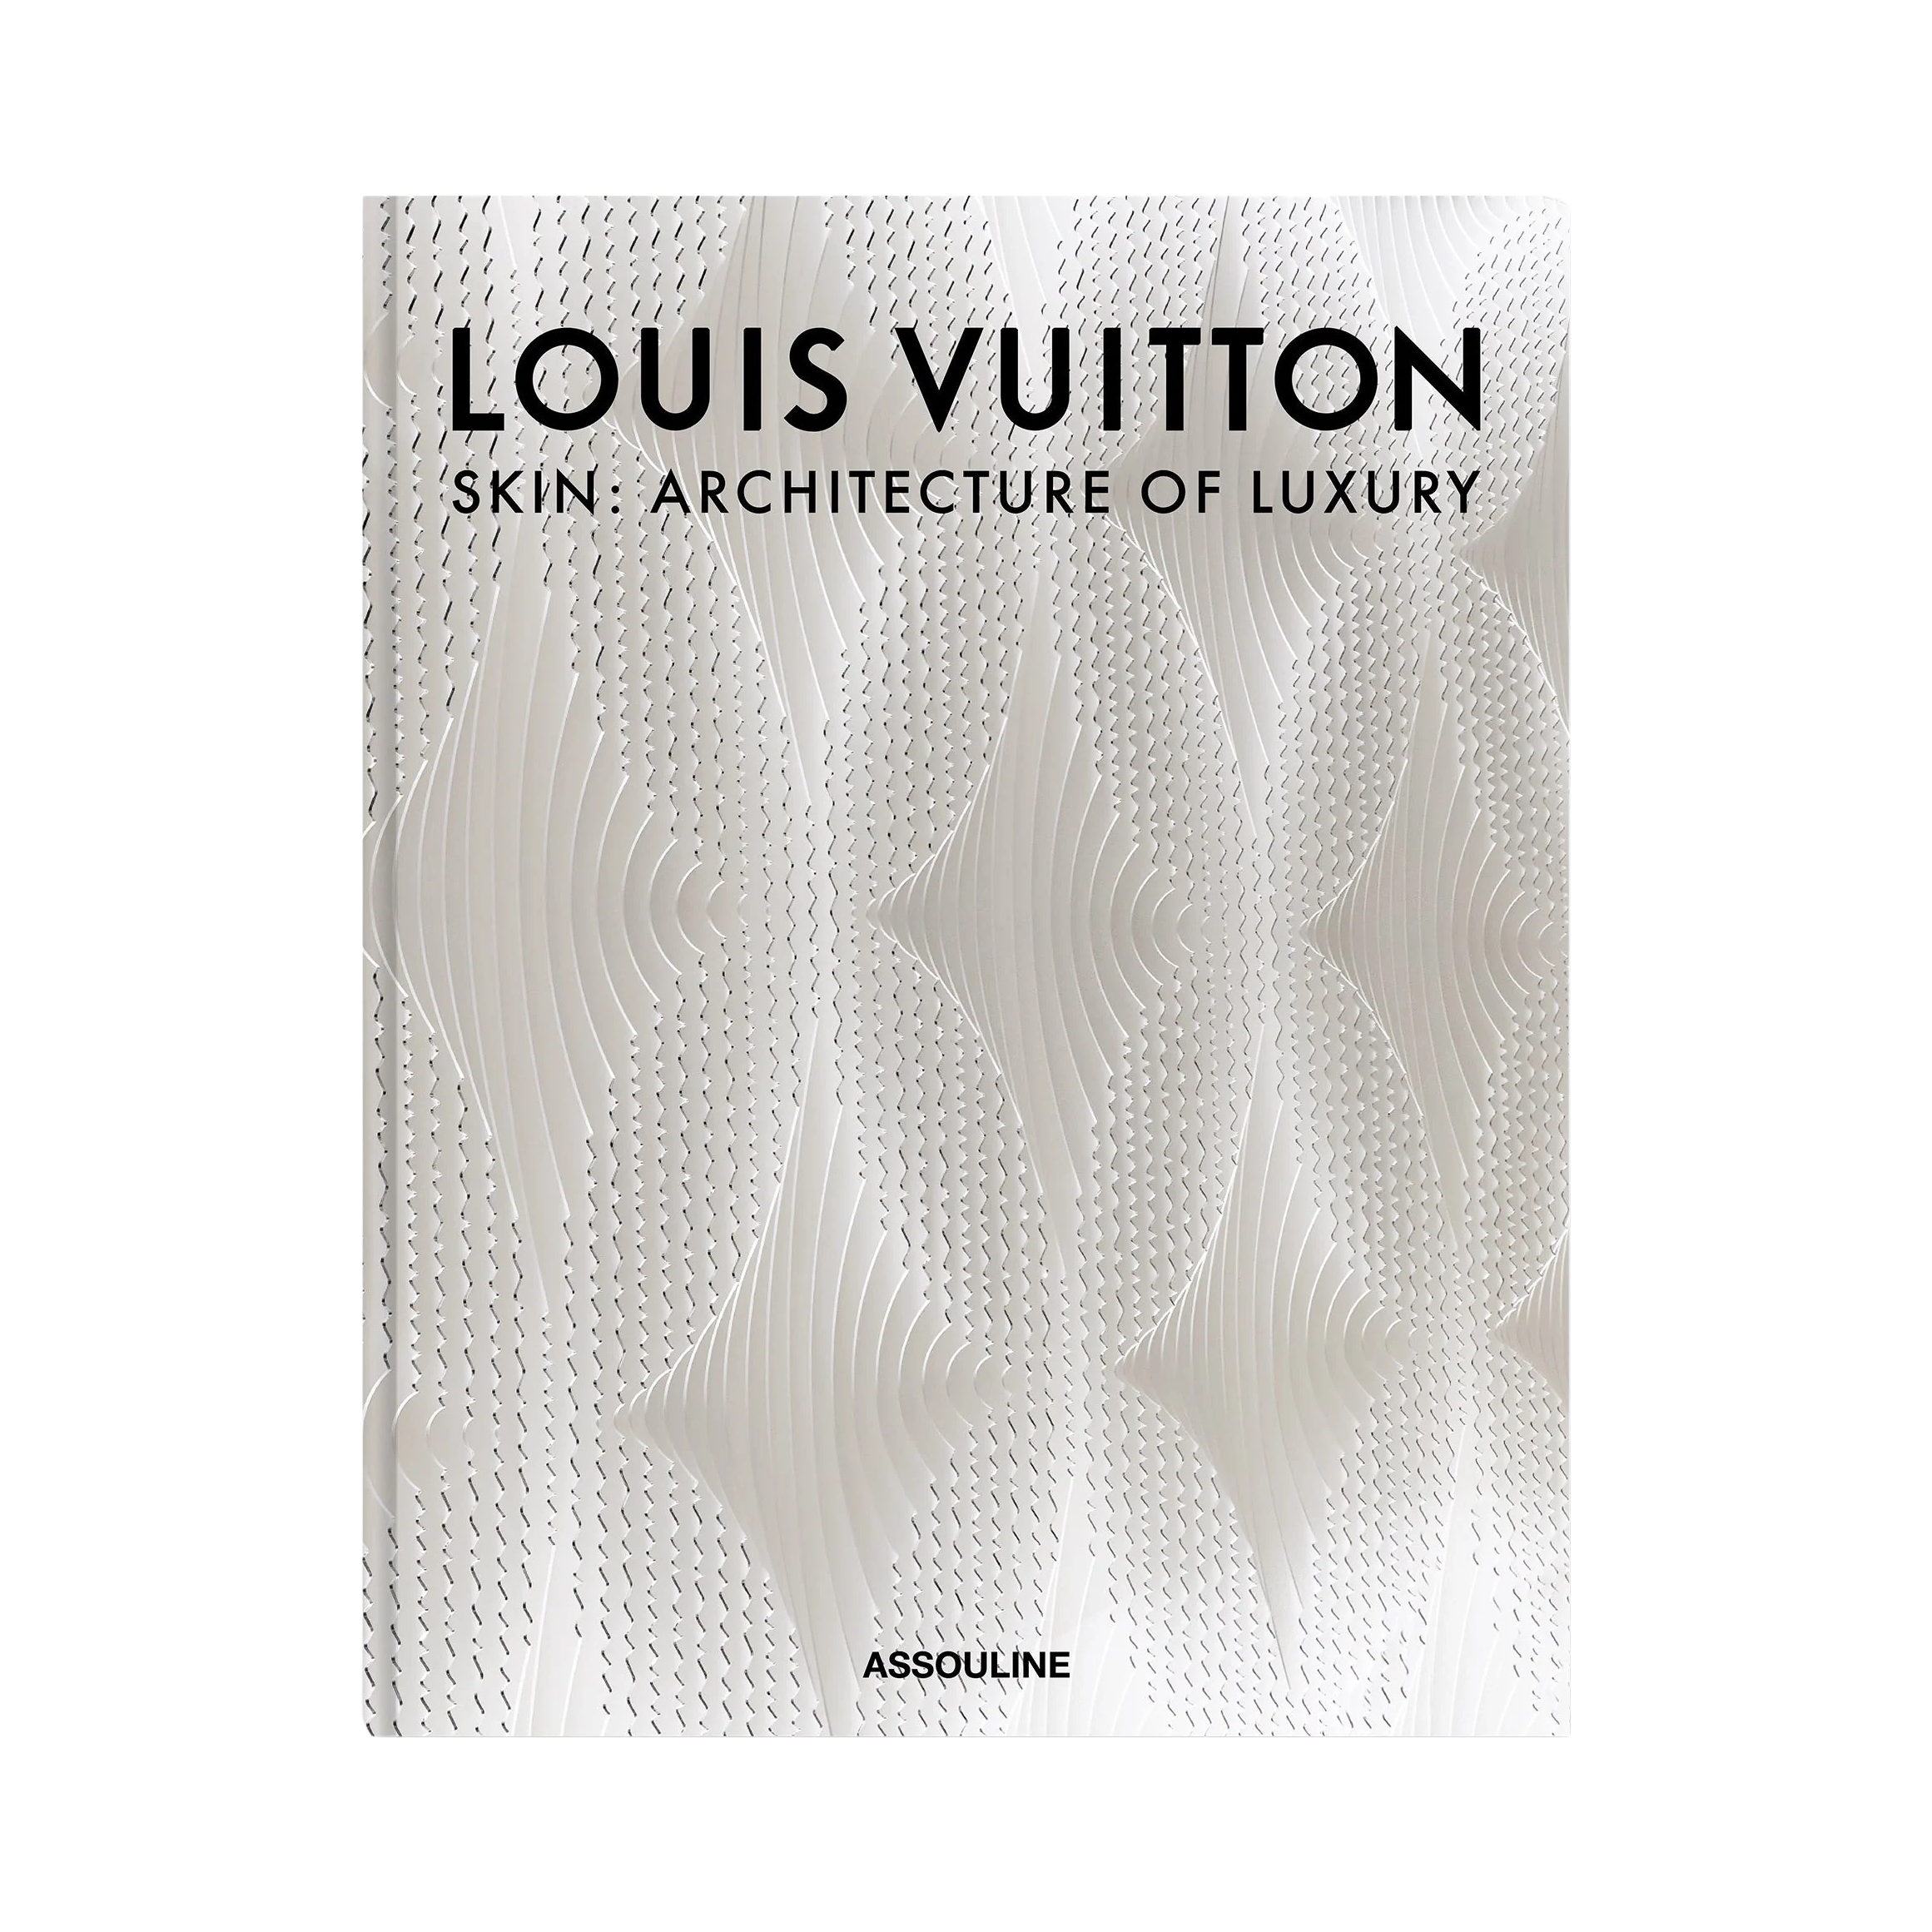 Louis Vuitton table book  collectible Assouline book